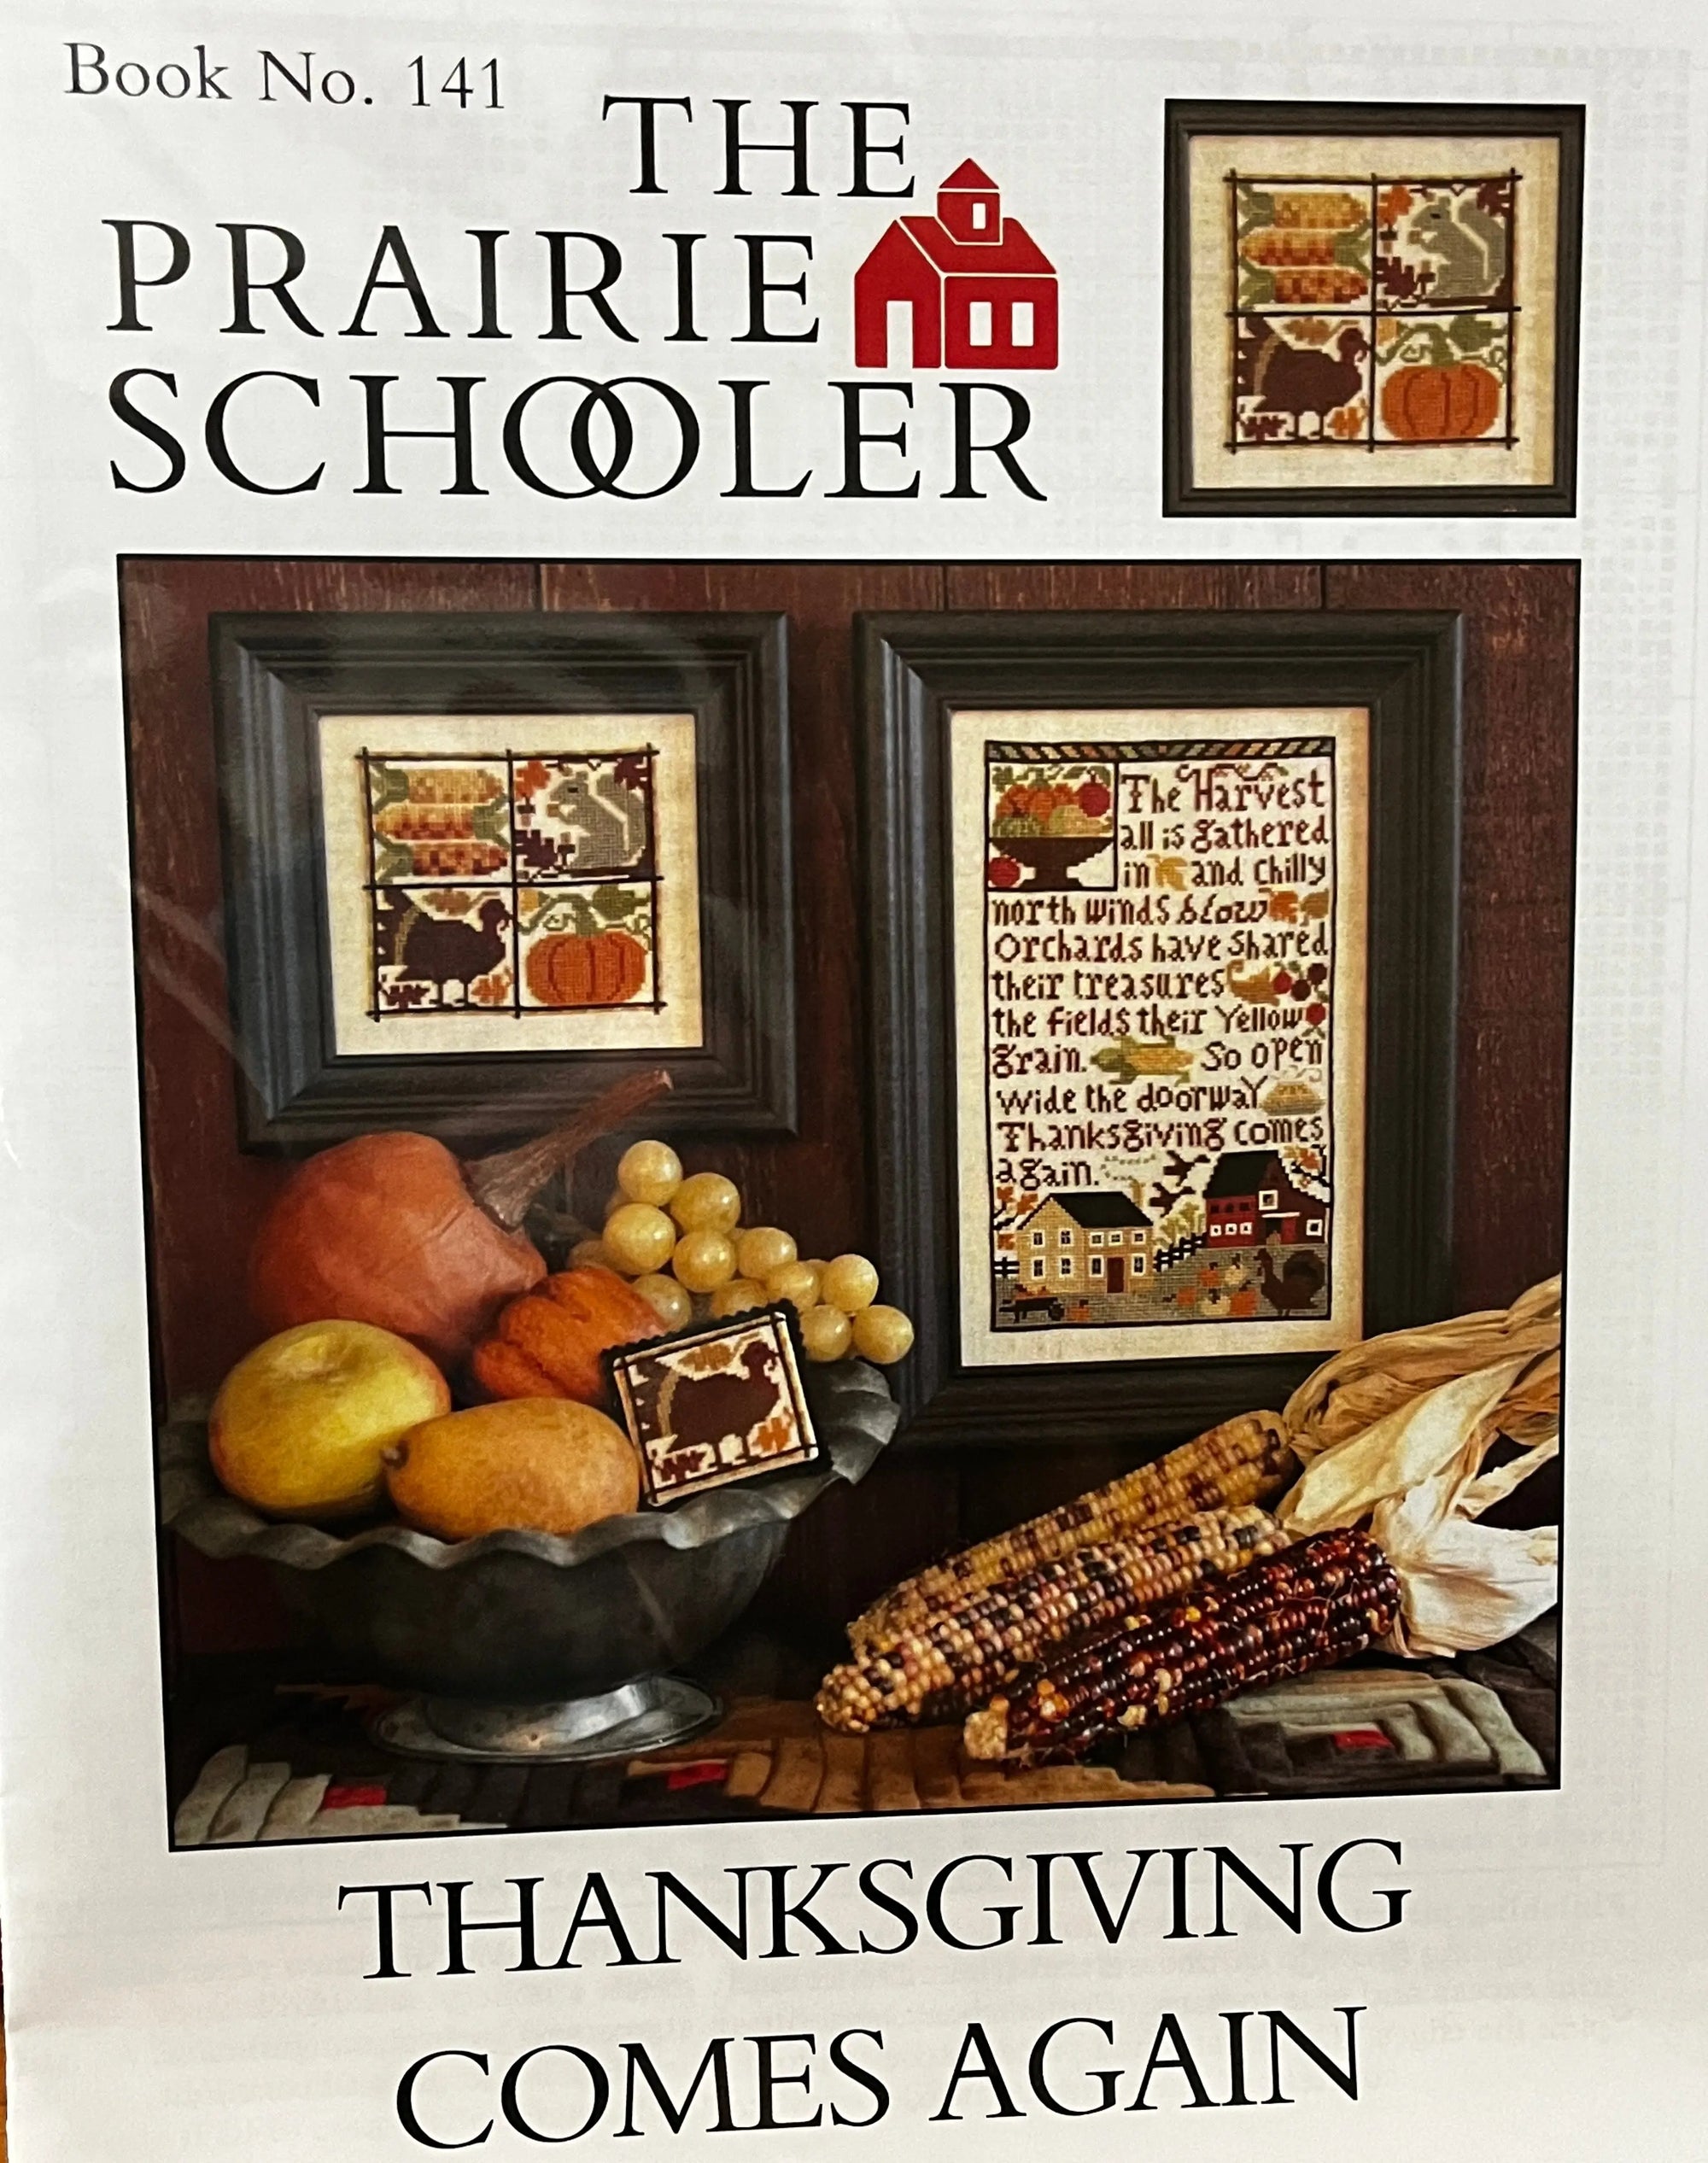 Thanksgiving Comes Again by The Prairie Schooler The Prairie Schooler